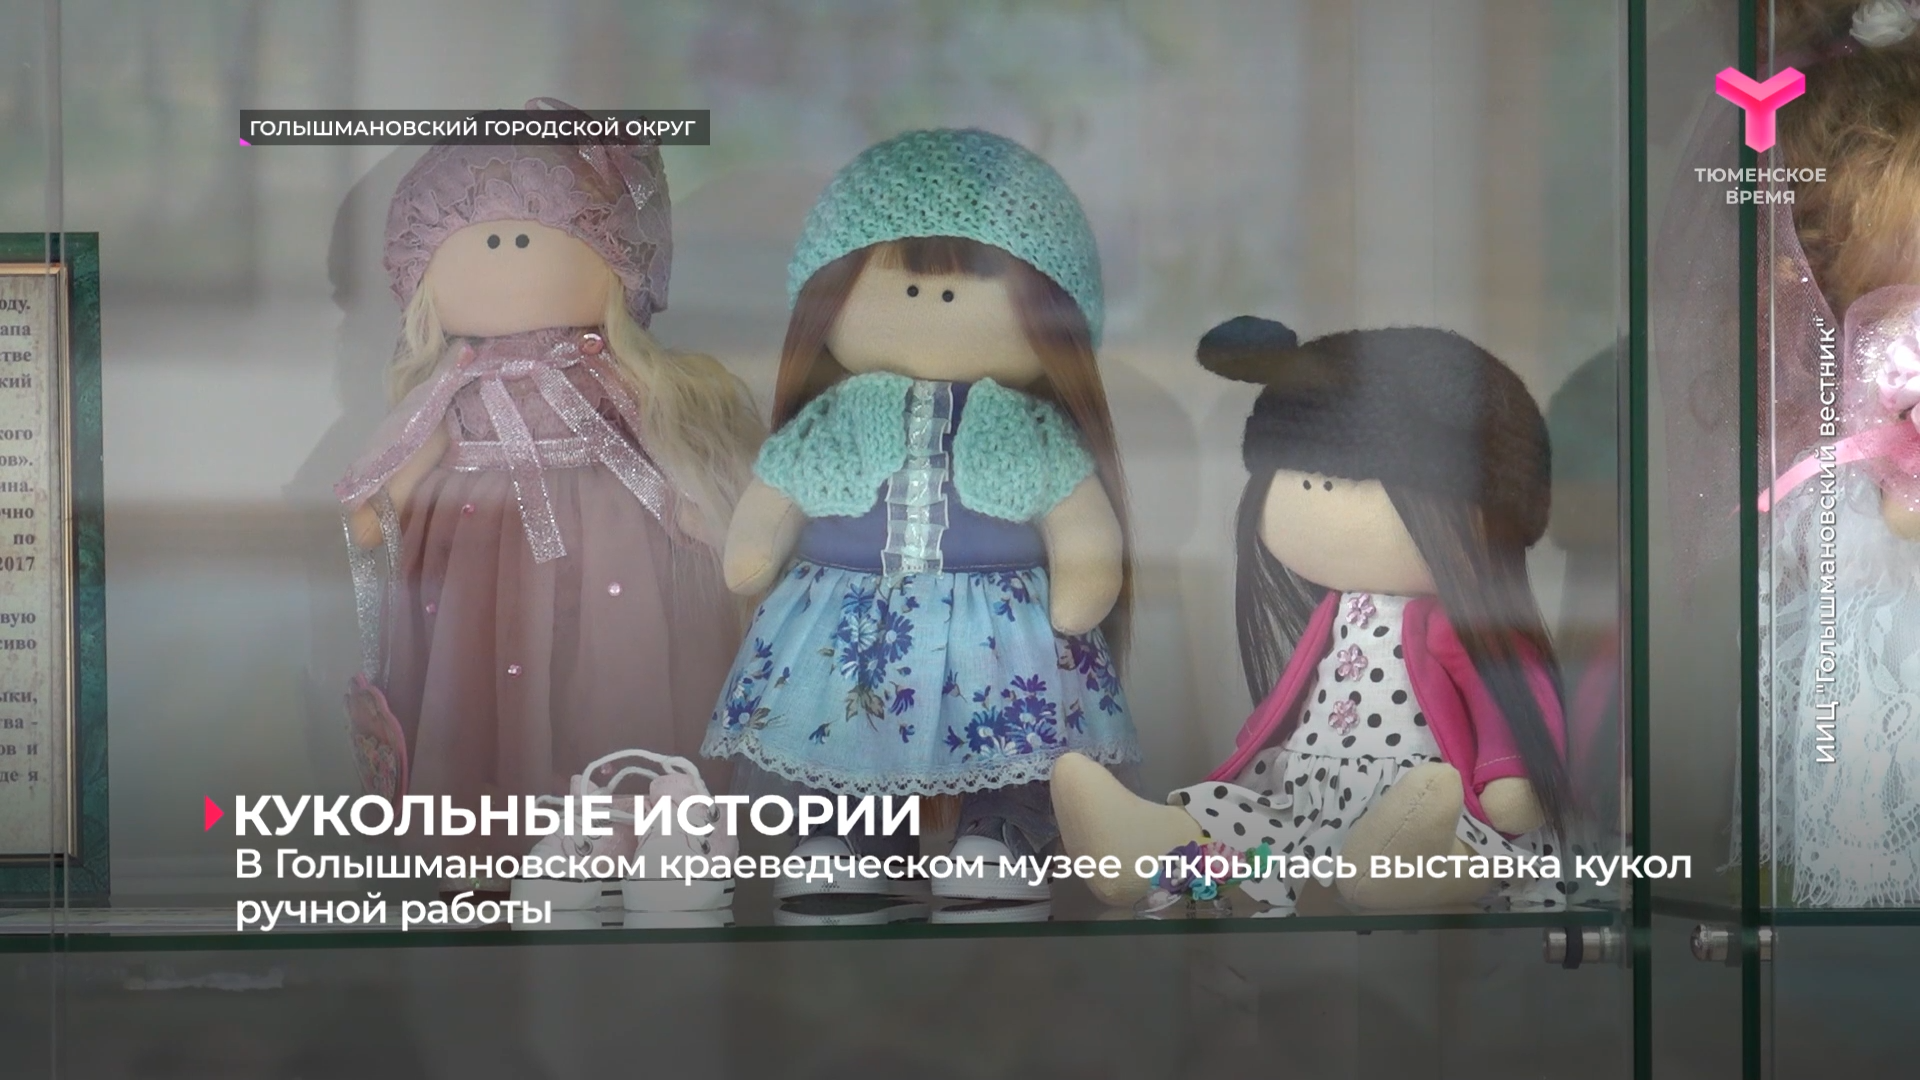 В Голышмановском краеведческом музее открылась выставка кукол ручной работы